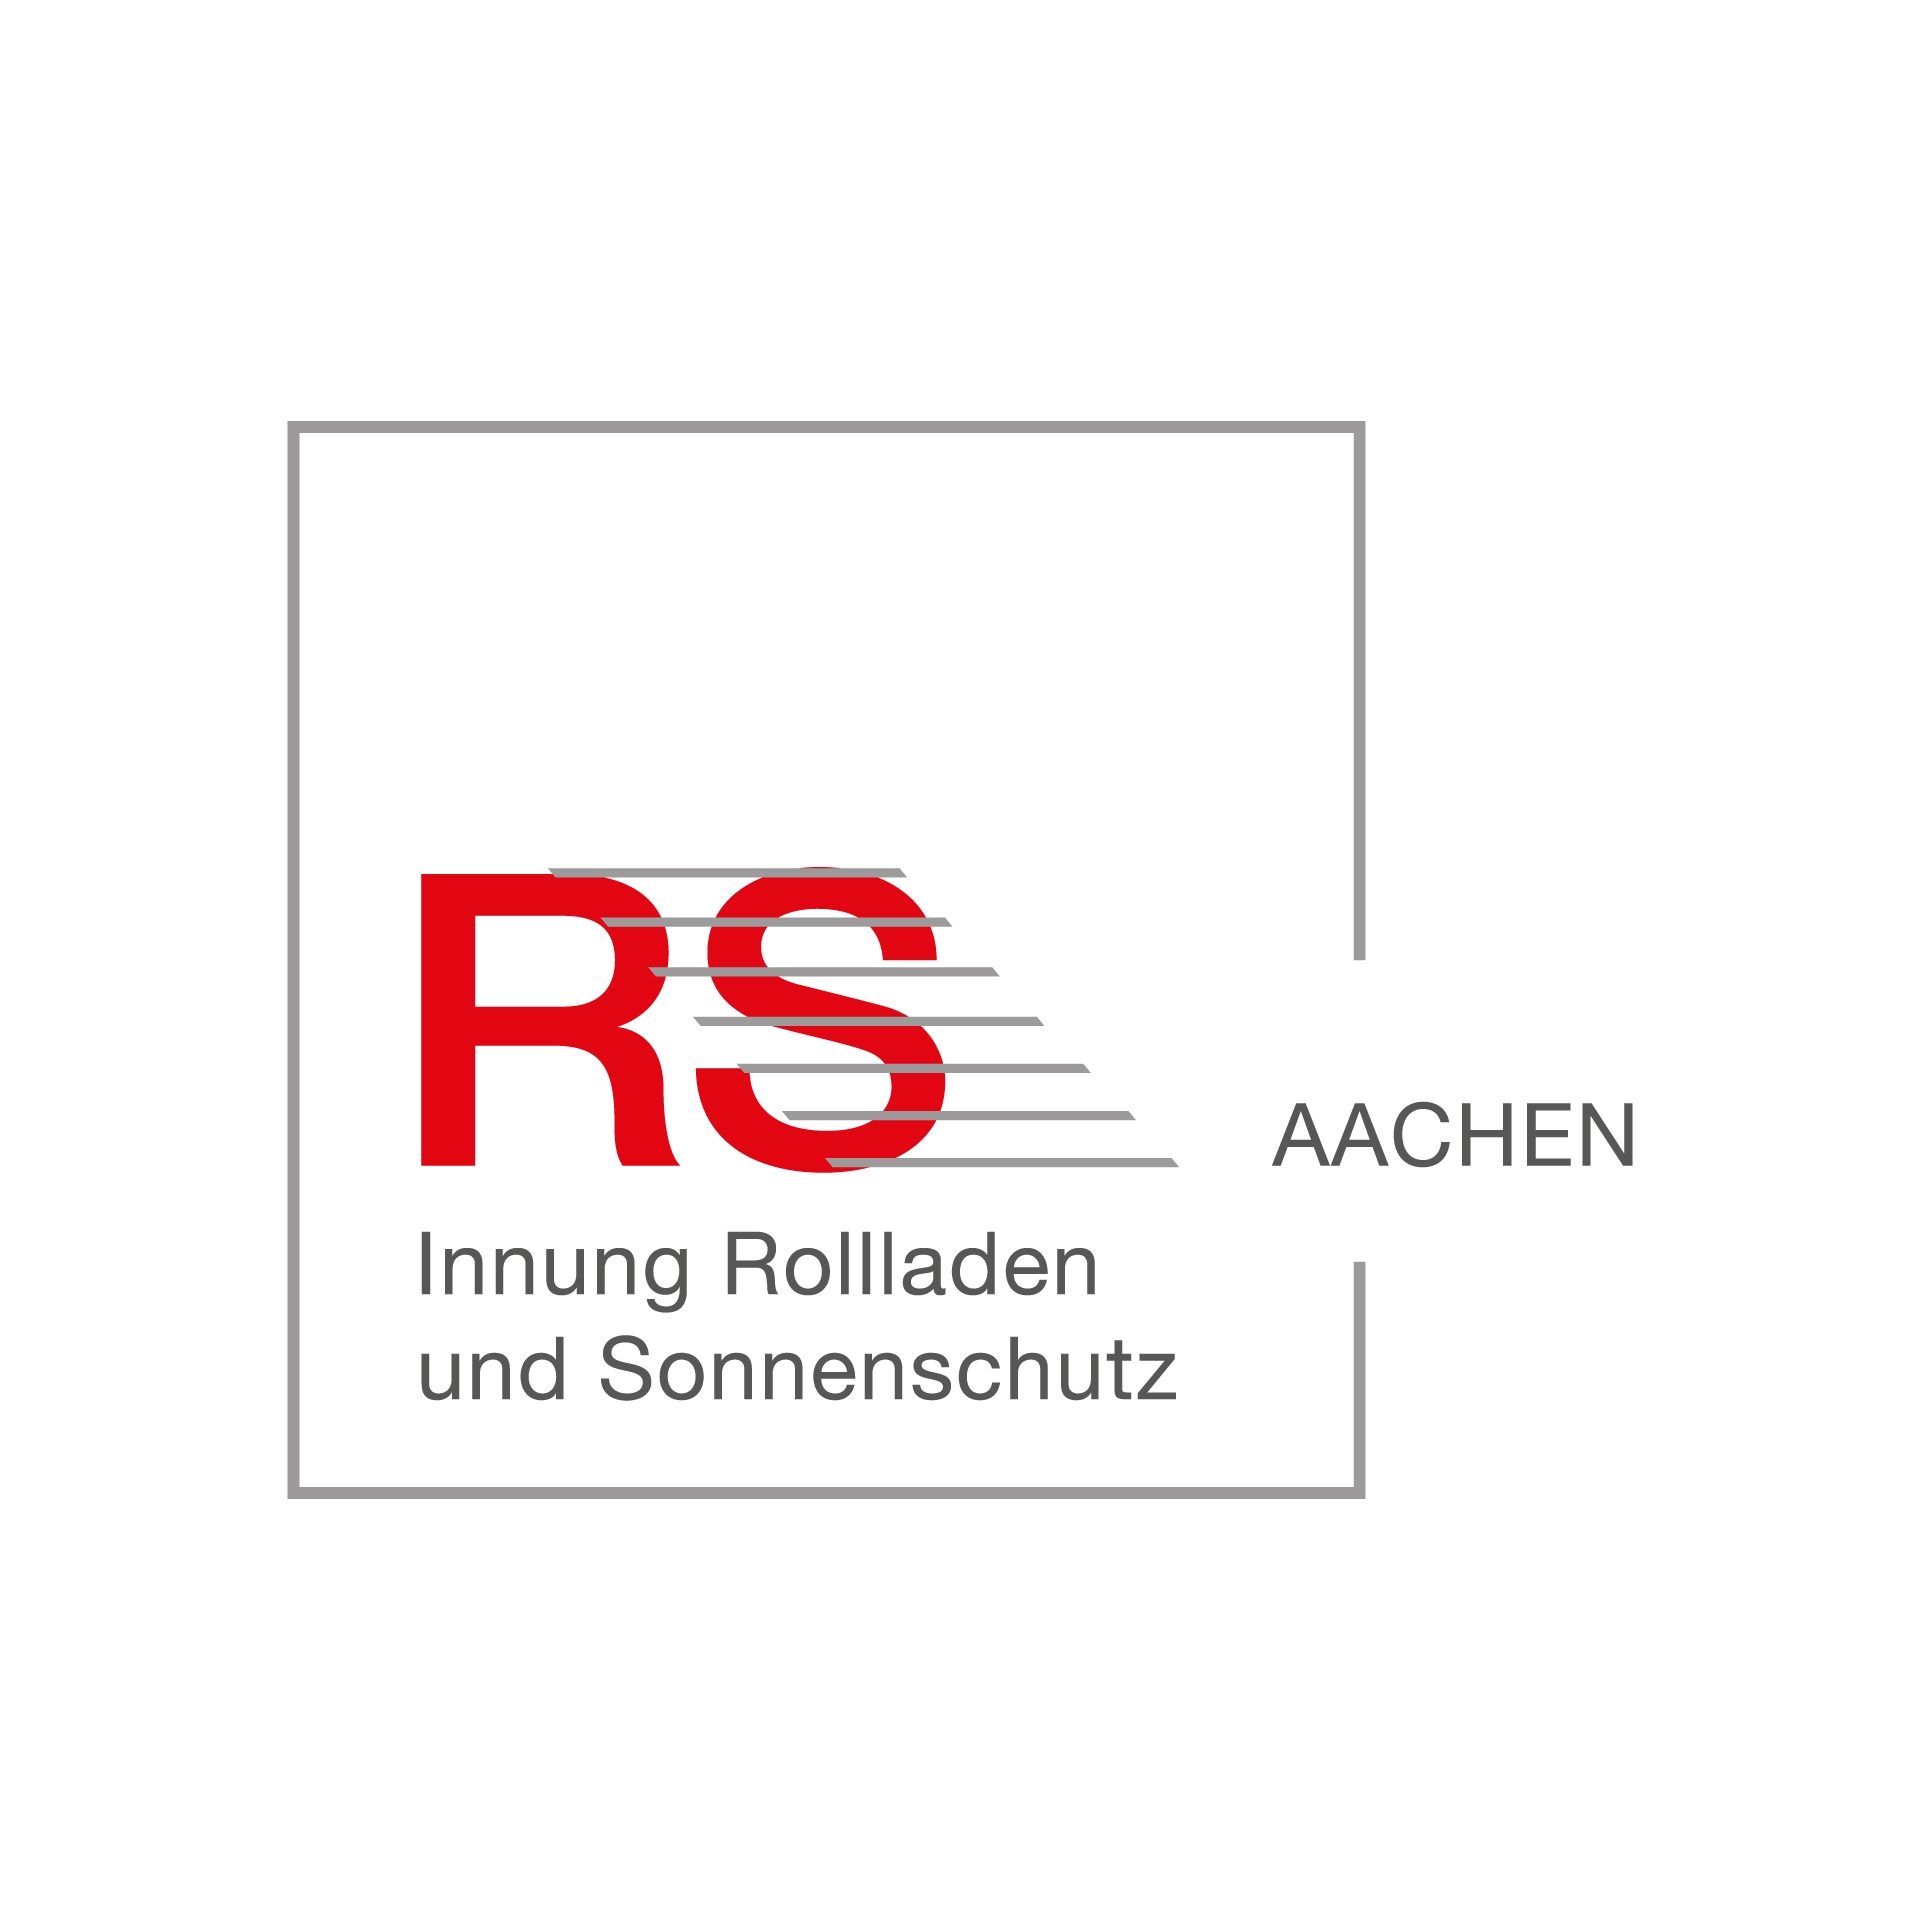 Ansprechpartner - Innung Rollladen und Sonnenschutz Aachen 